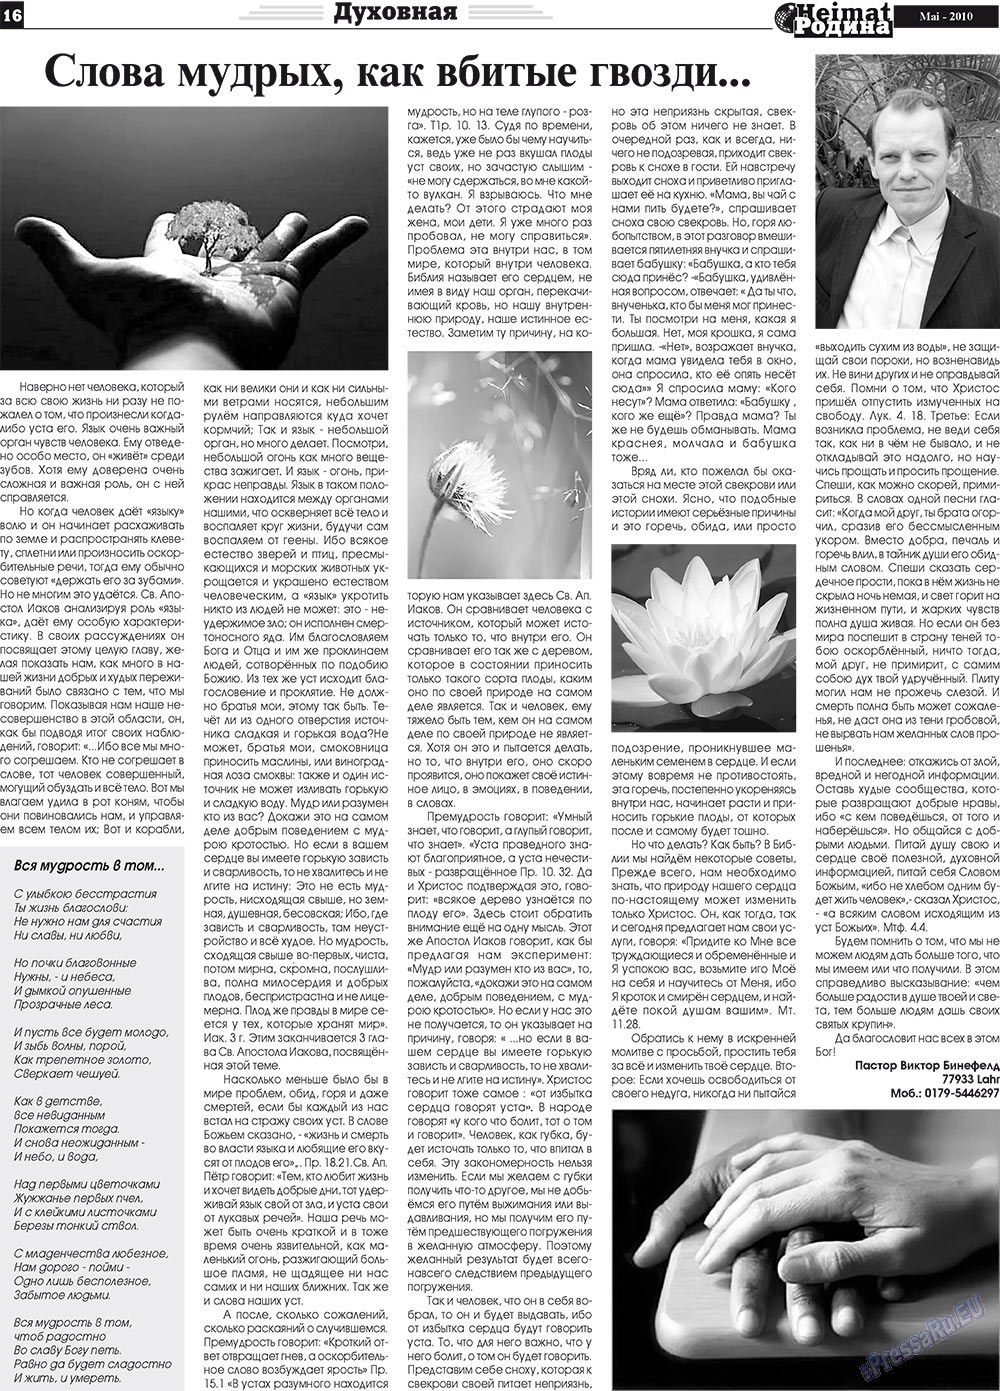 Heimat-Родина (газета). 2010 год, номер 5, стр. 16